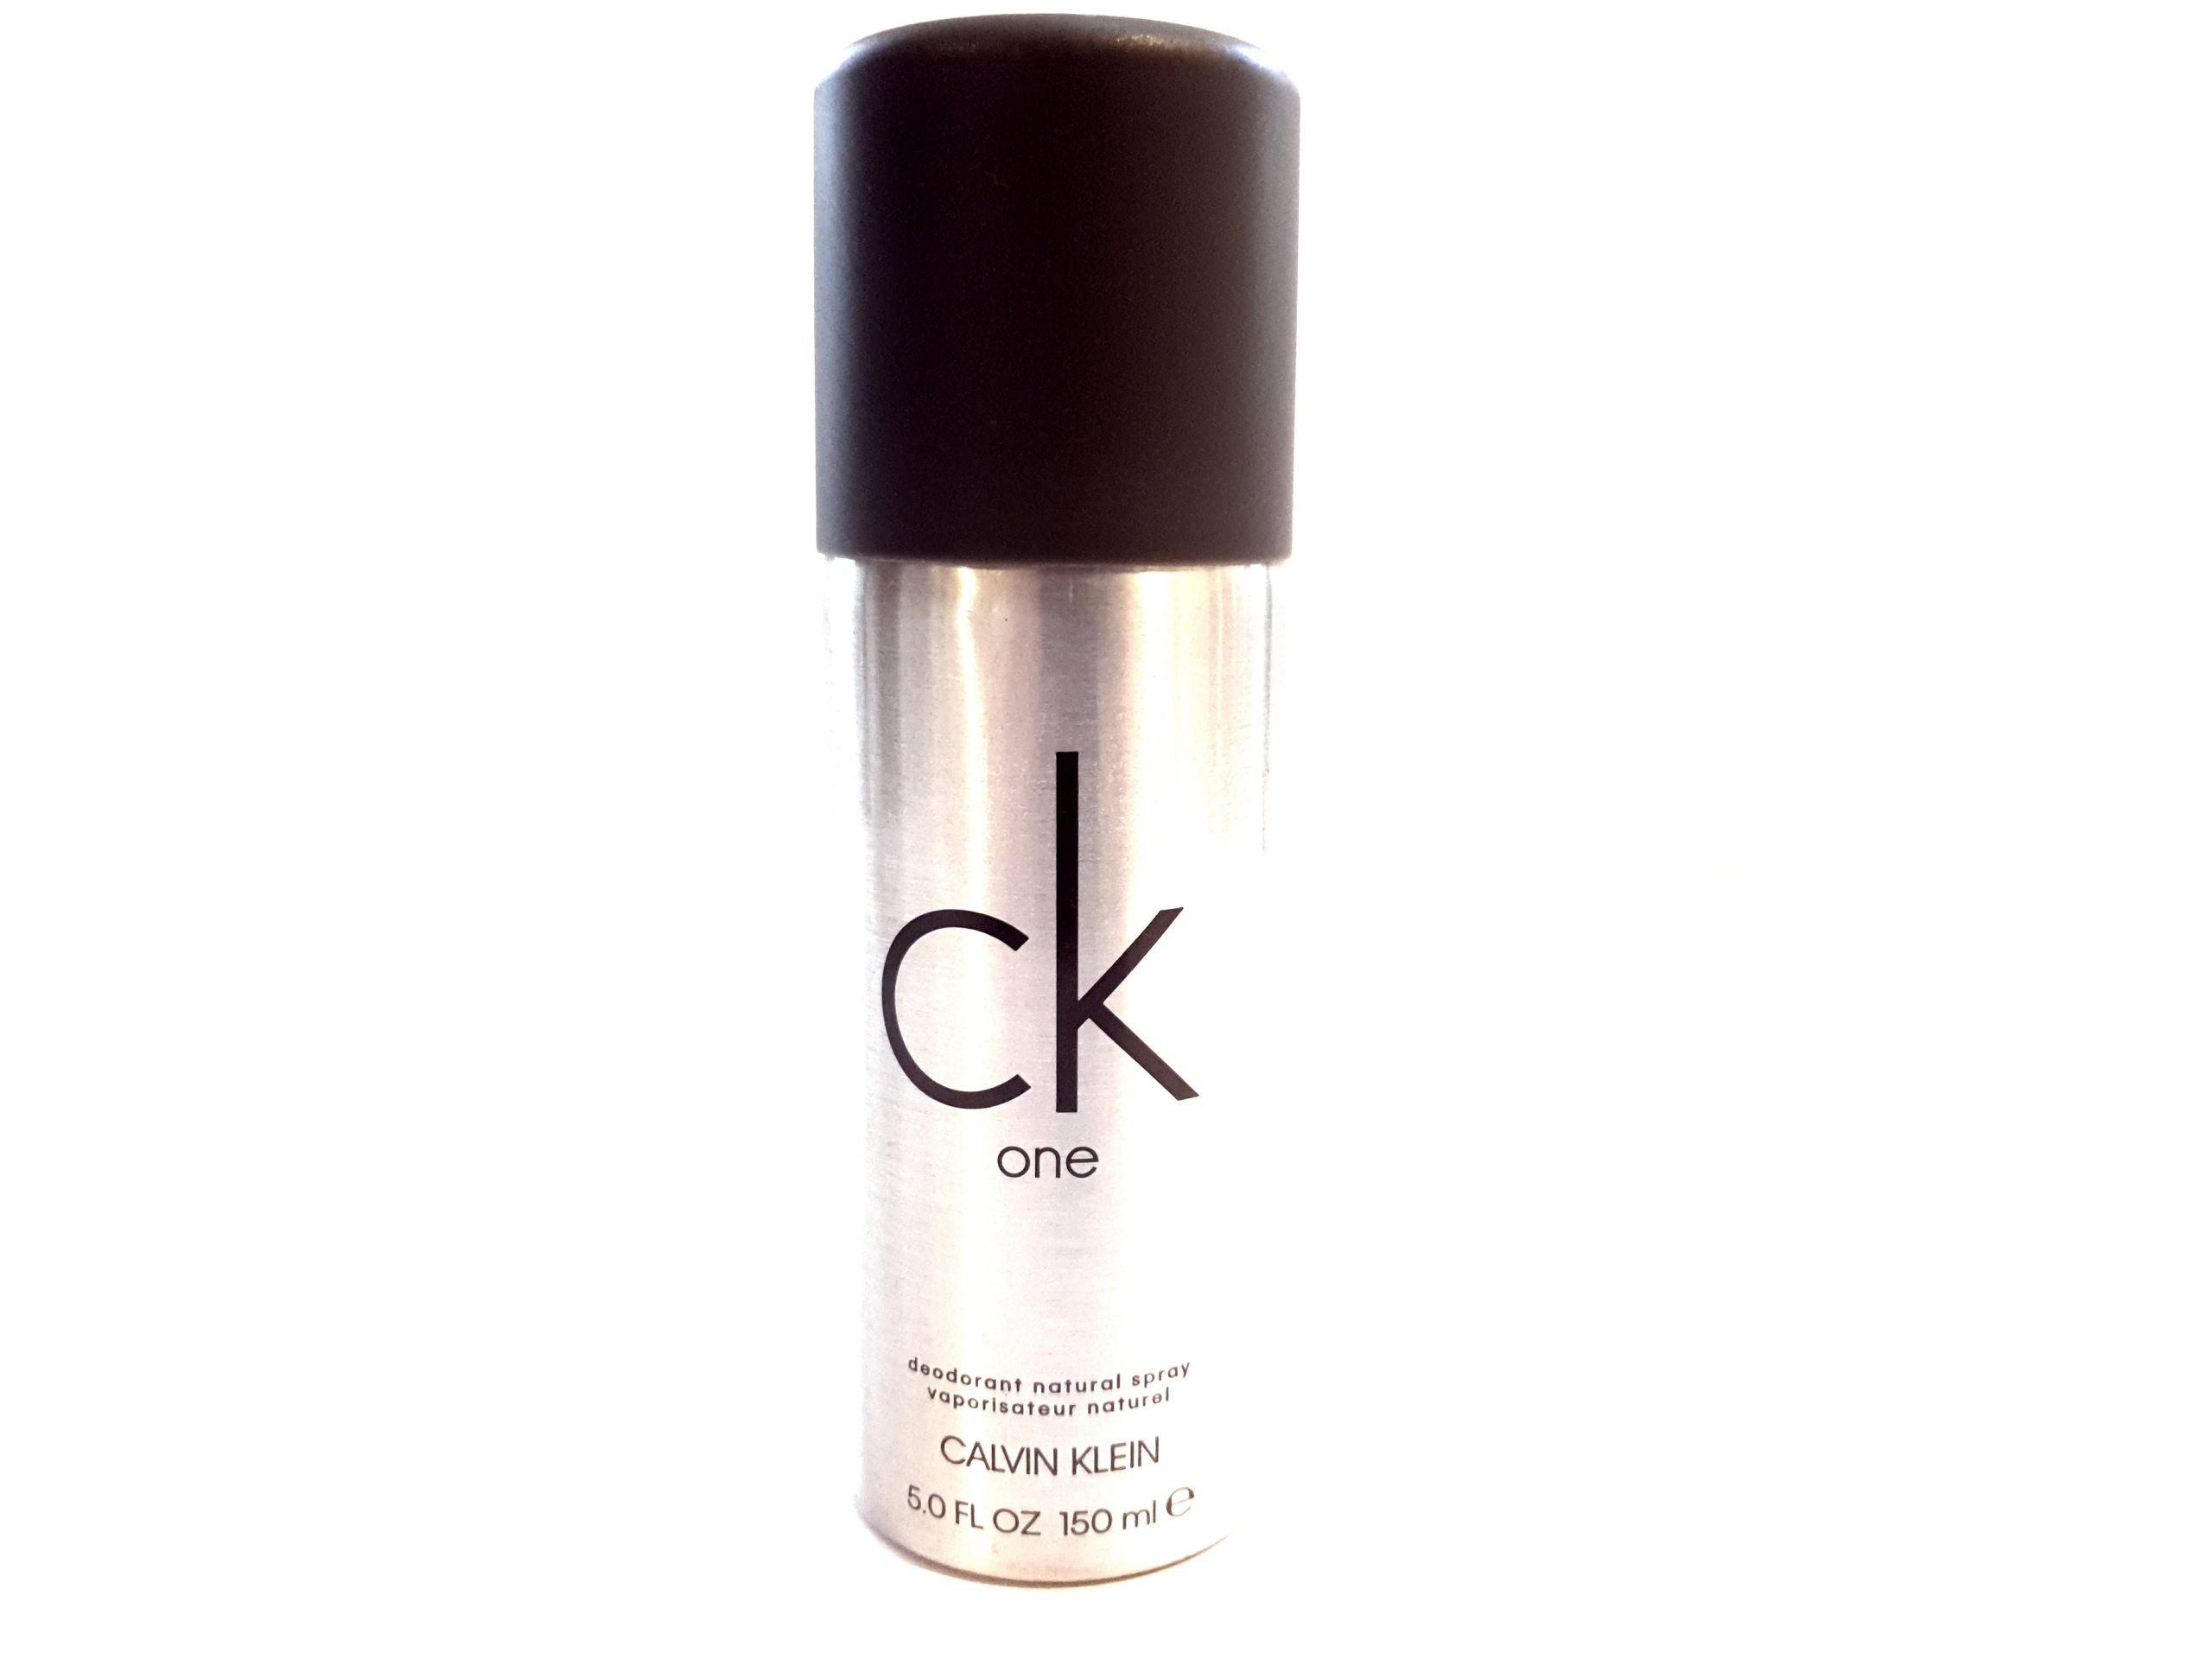 3x CK One Deodorant Body Spray 150ml on a white background.